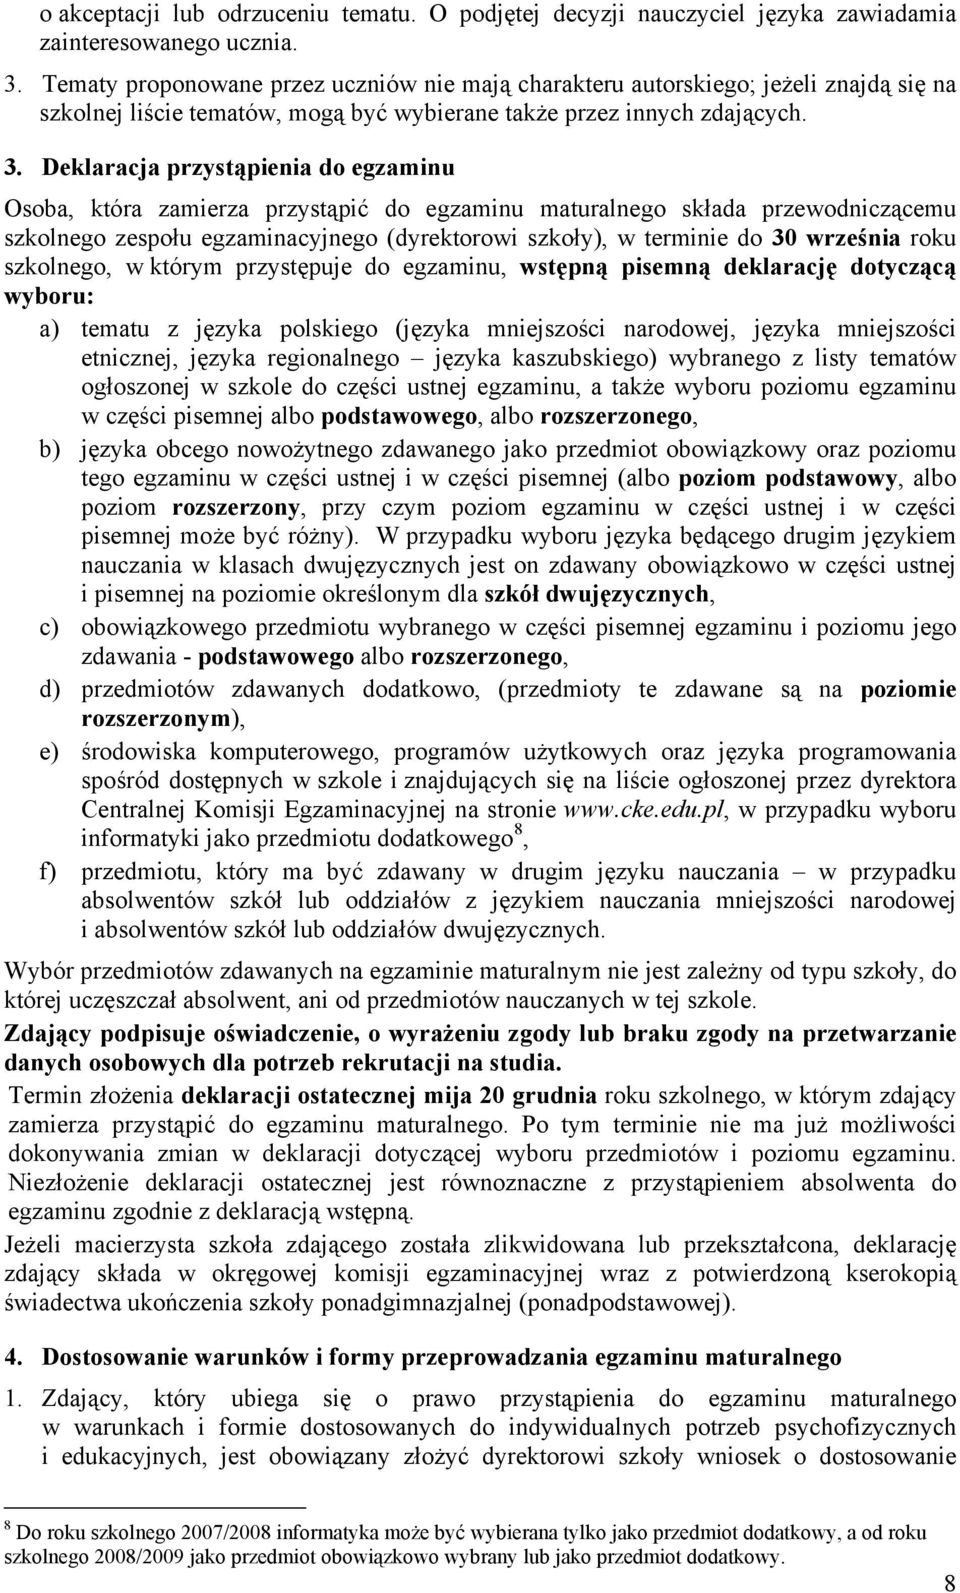 Deklaracja przystąpienia do egzaminu Osoba, która zamierza przystąpić do egzaminu maturalnego składa przewodniczącemu szkolnego zespołu egzaminacyjnego (dyrektorowi szkoły), w terminie do 30 września